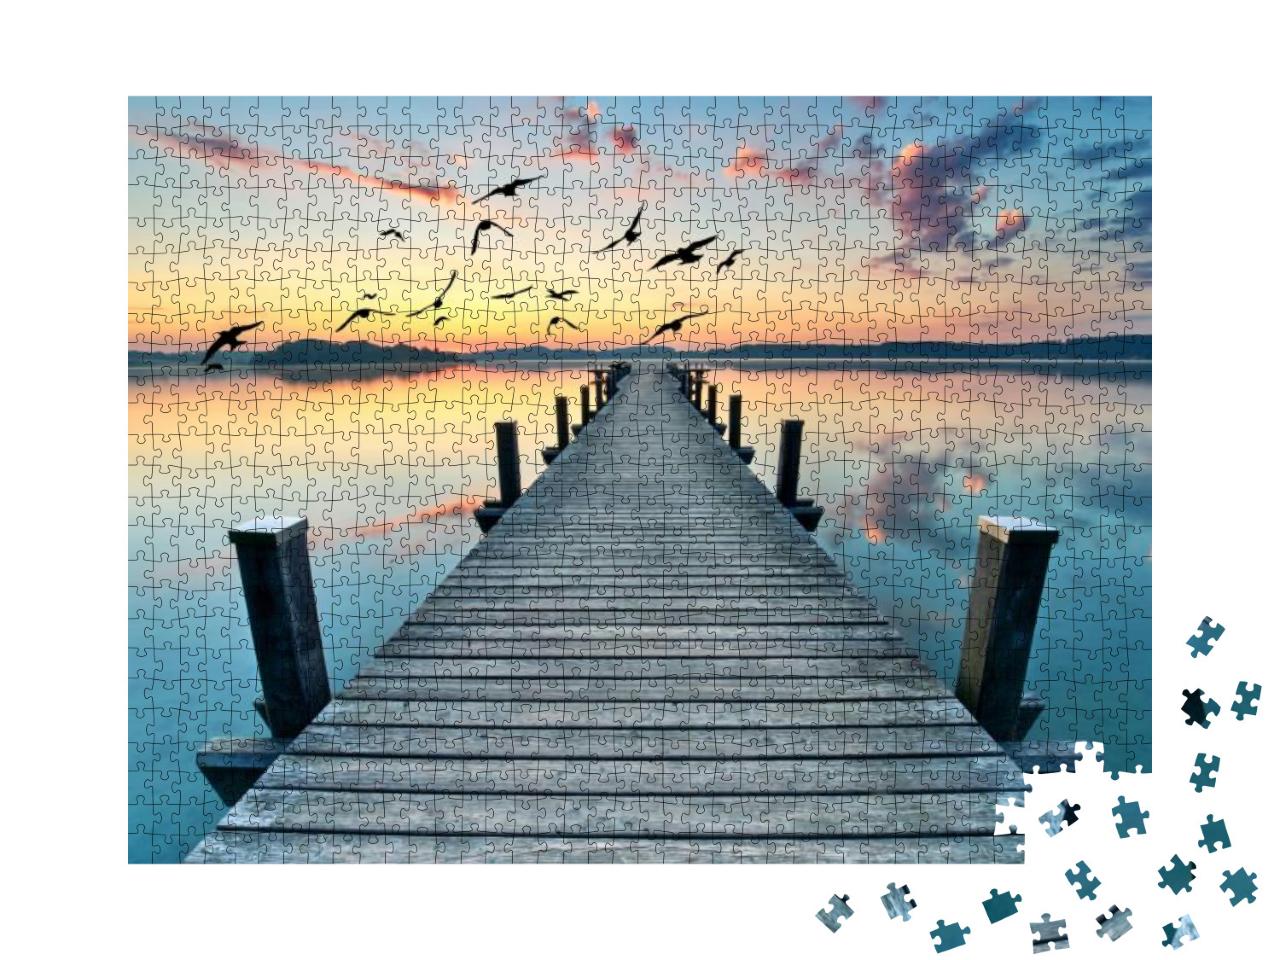 Puzzle 1000 Teile „Uferpromenade“